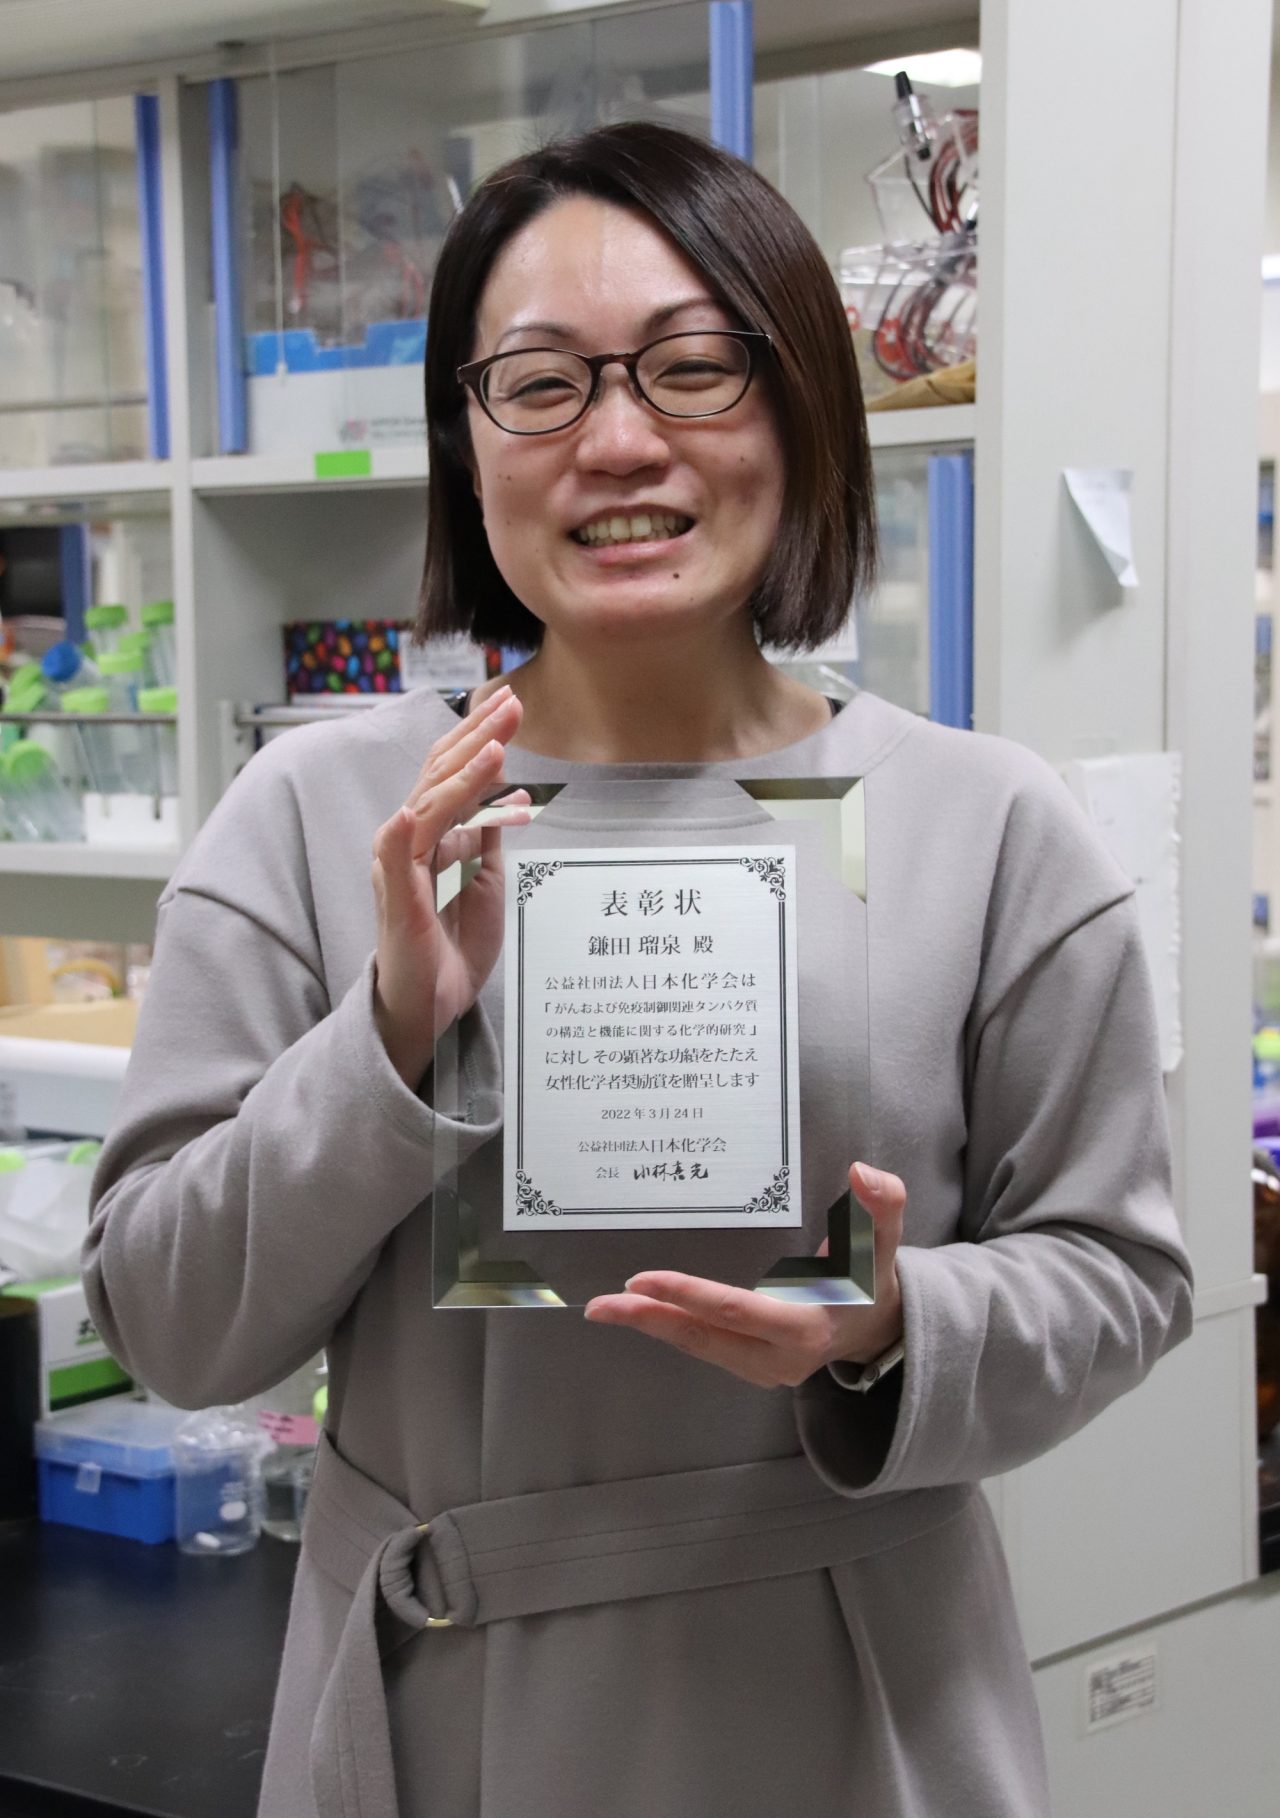 鎌田瑠泉准教授が21年度日本化学会 女性化学者奨励賞 を受賞しました 北海道大学 大学院理学研究院 化学部門 生物化学研究室